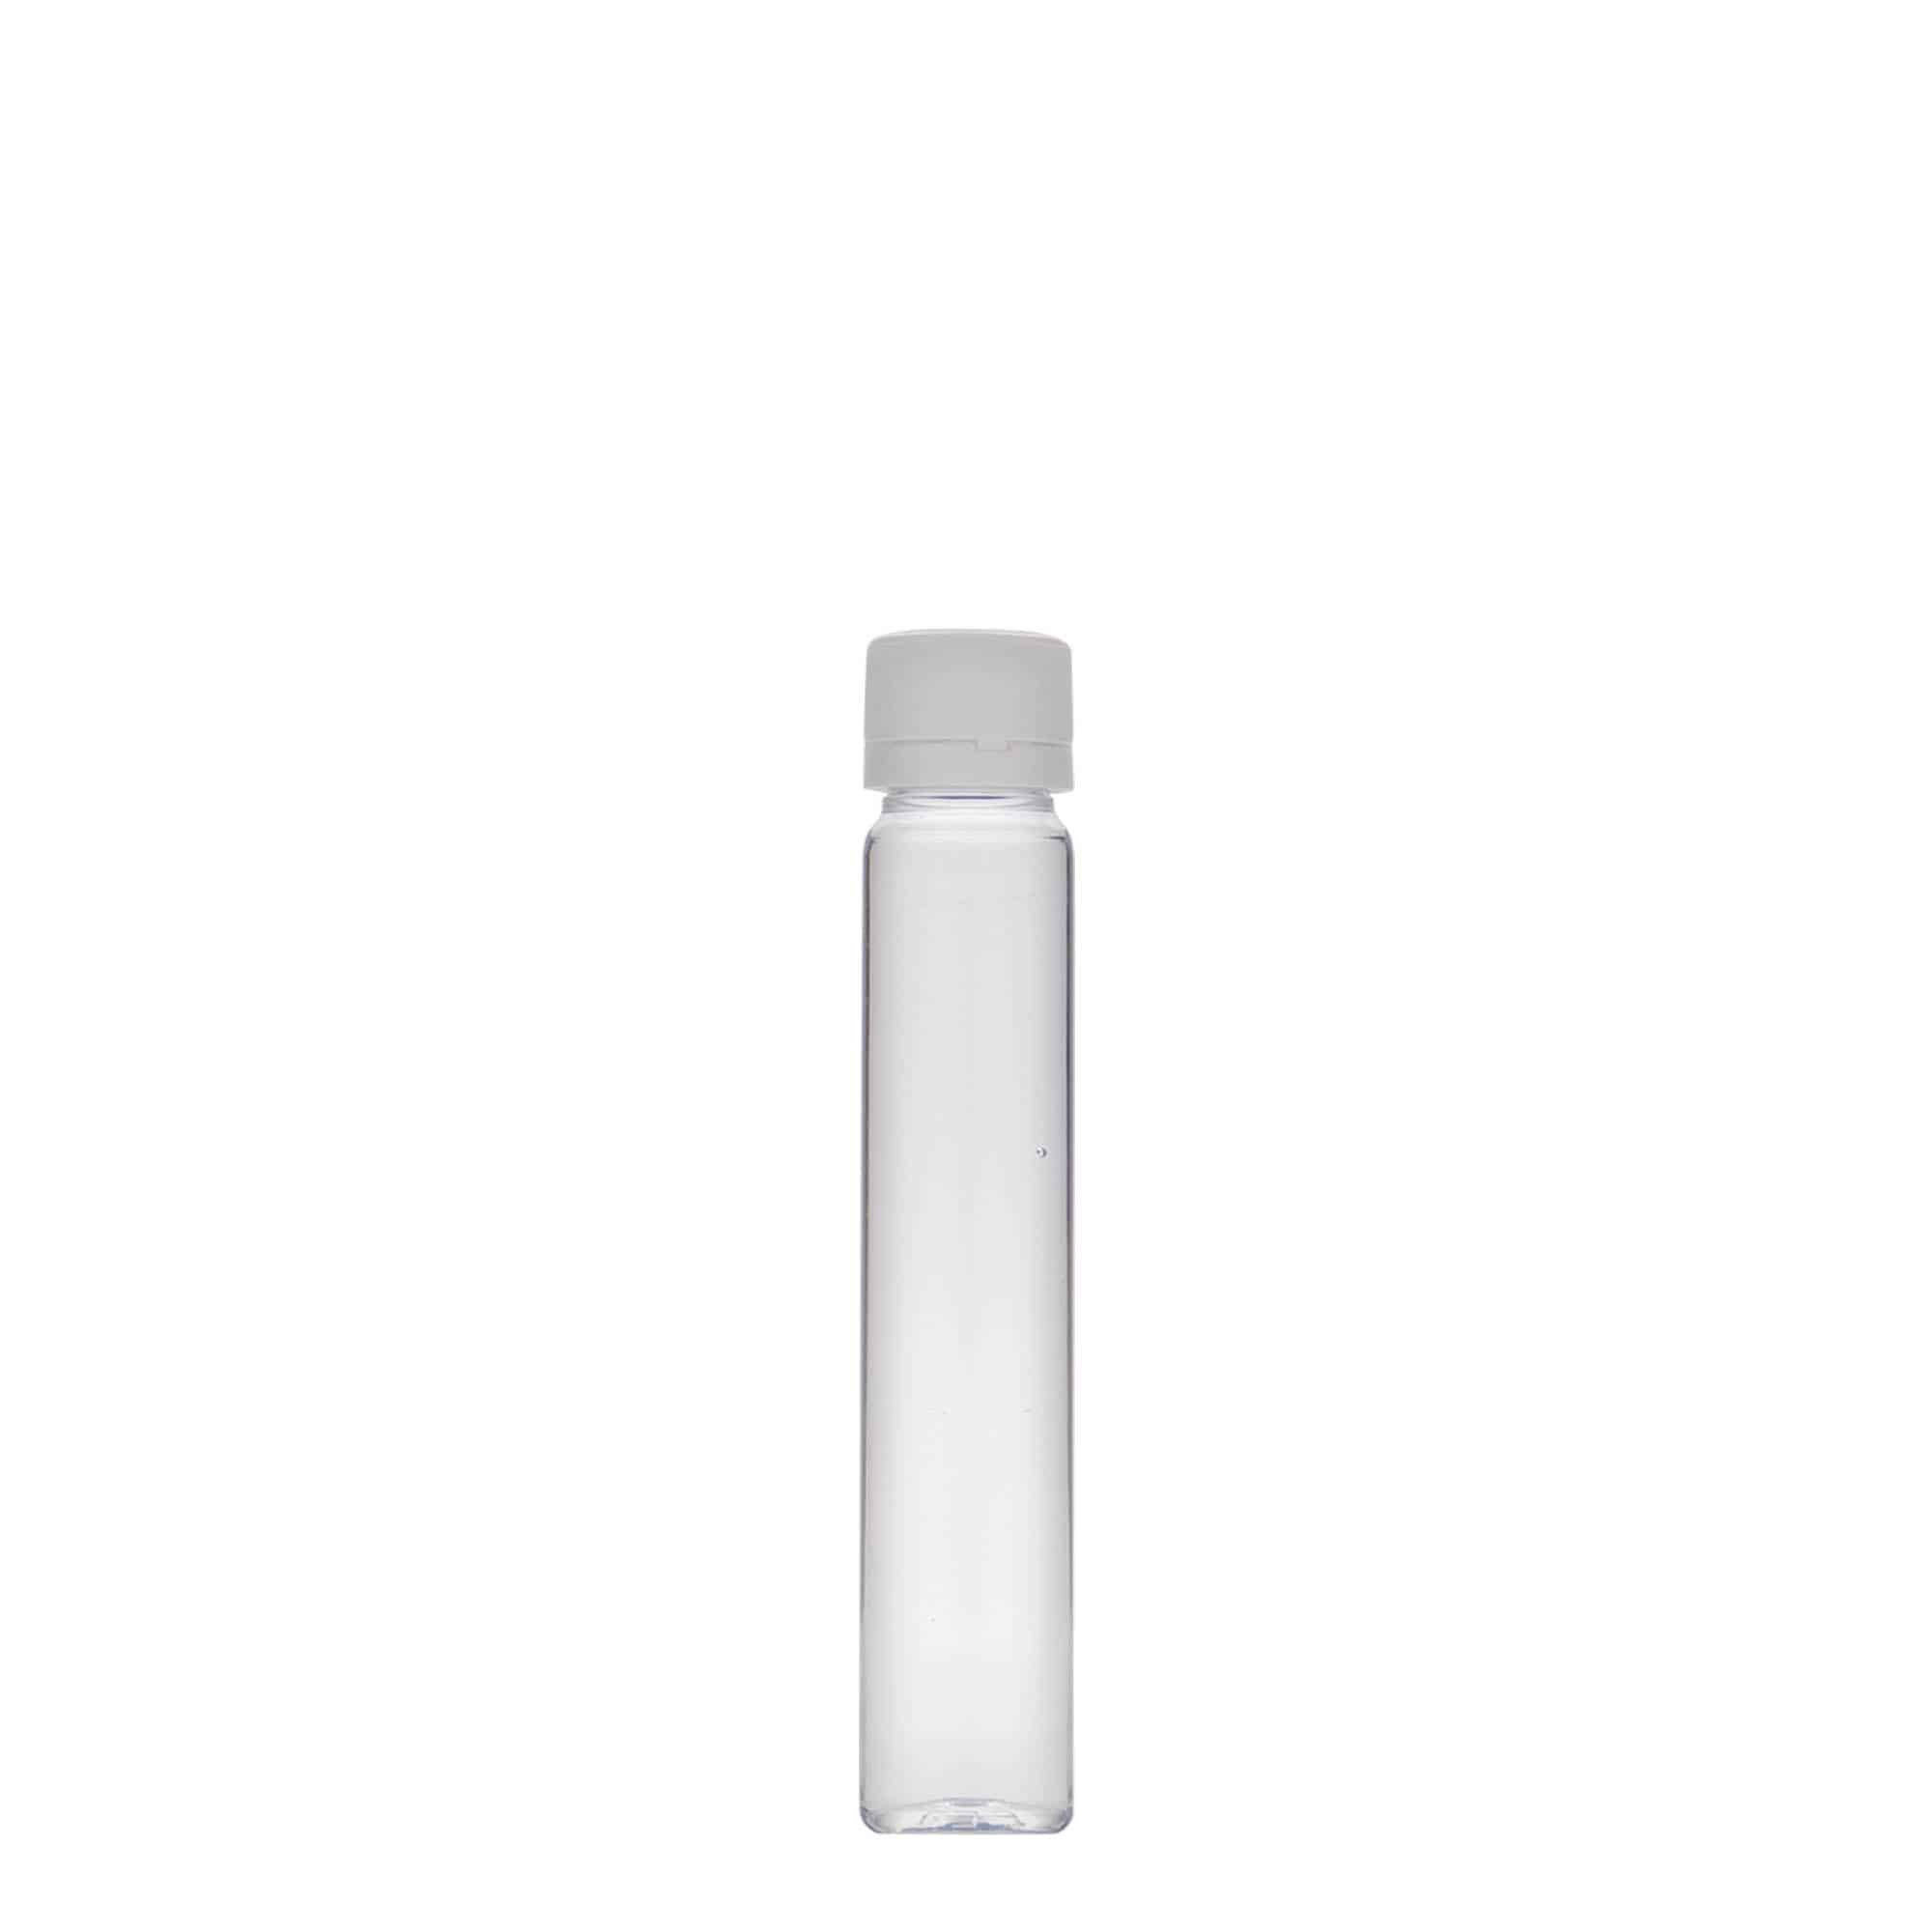 Tubito de PET de 25 ml, plástico, boca: tapón de rosca